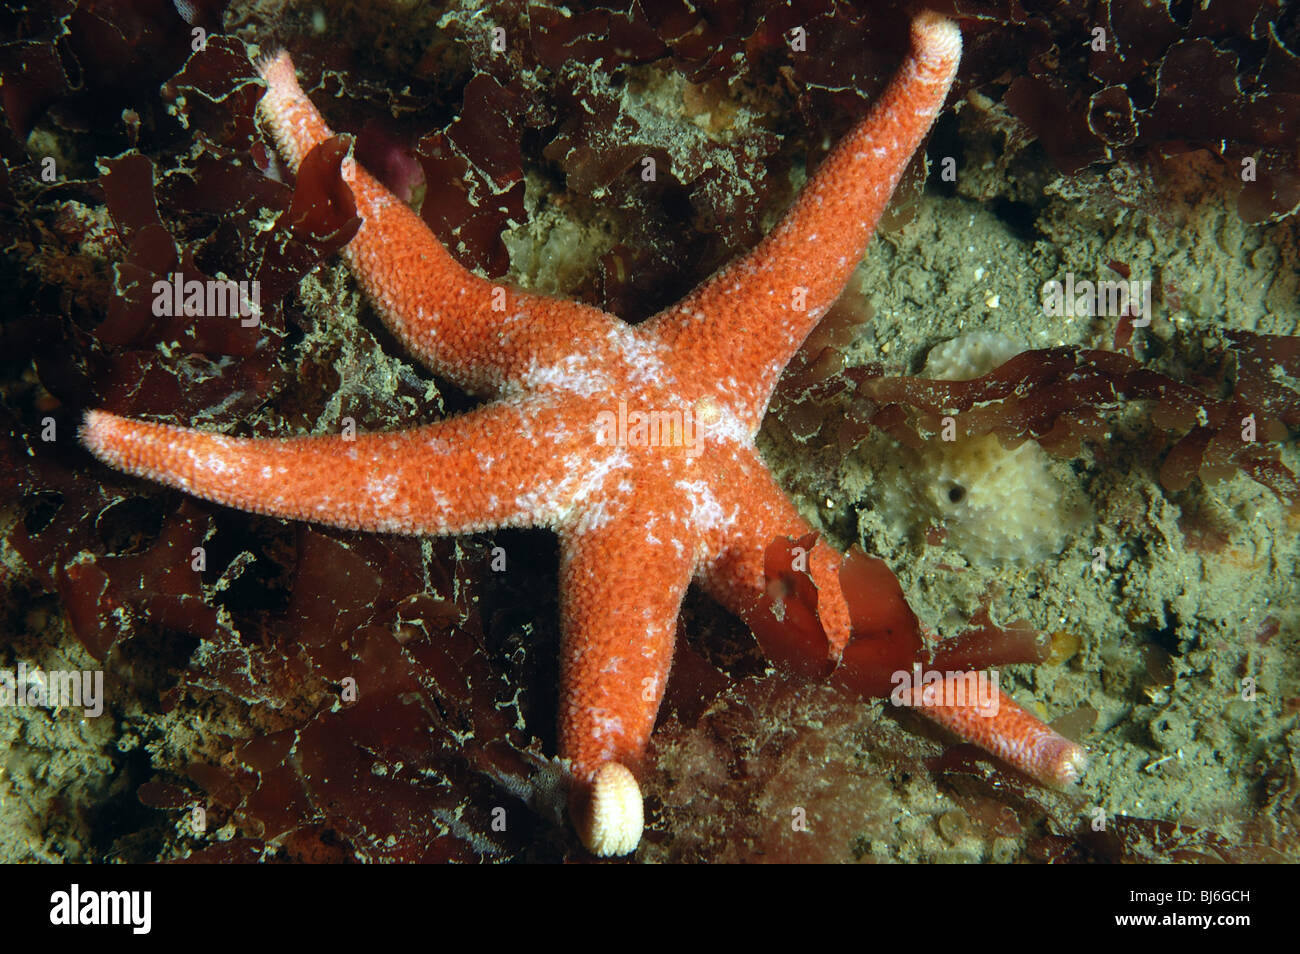 Bloody henry starfish,Henricia aculata,rocky reef,Kimmeridge bay,dorset.june 2007. Stock Photo